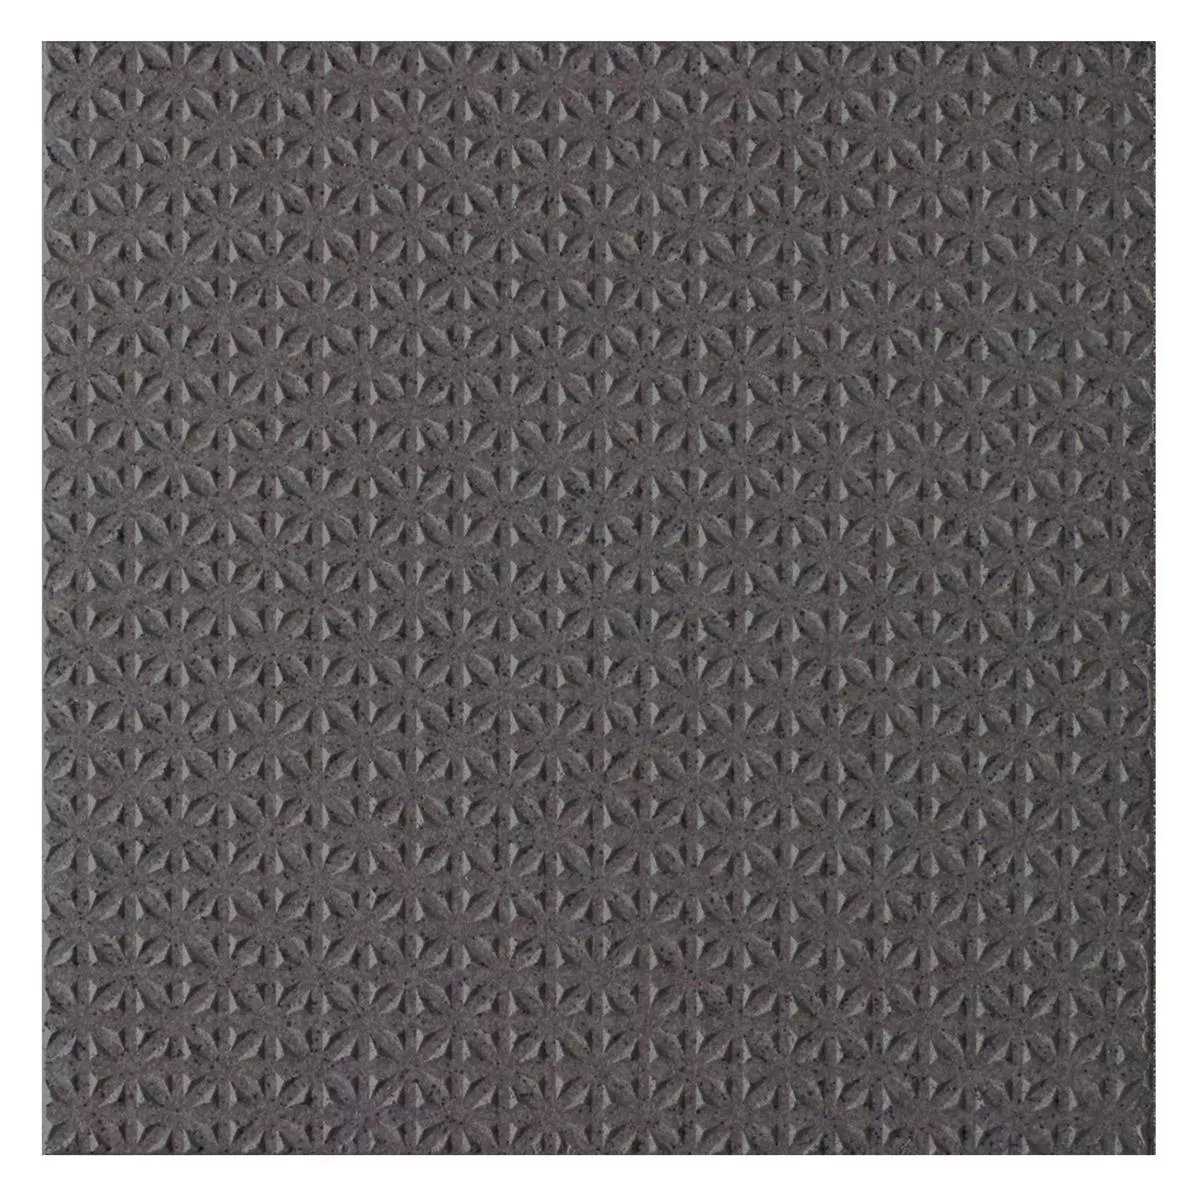 Πλακάκια Δαπέδου Courage Ψιλό Σιτάρι R12/V4/C Ανθρακίτης 20x20cm